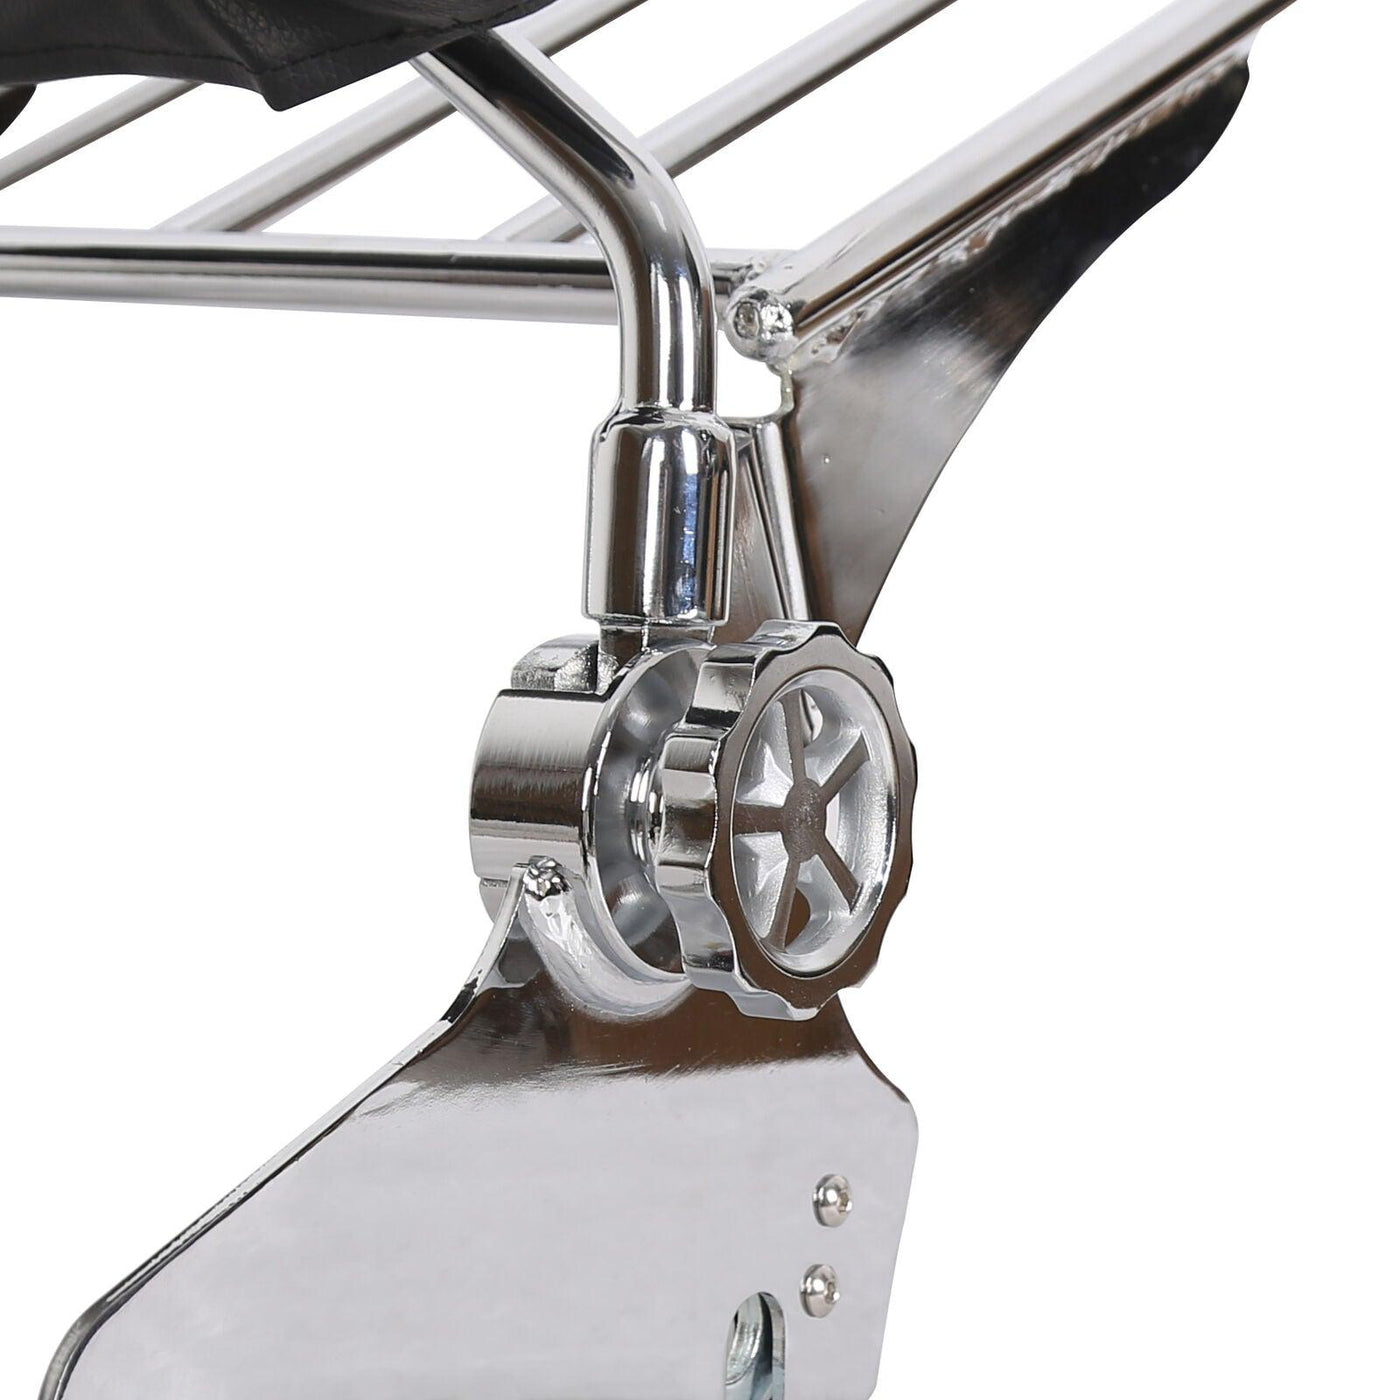 Adjustable Sissy Bar Backrest & Luggage Rack For Harley 97-08 Davidson Road King - Moto Life Products